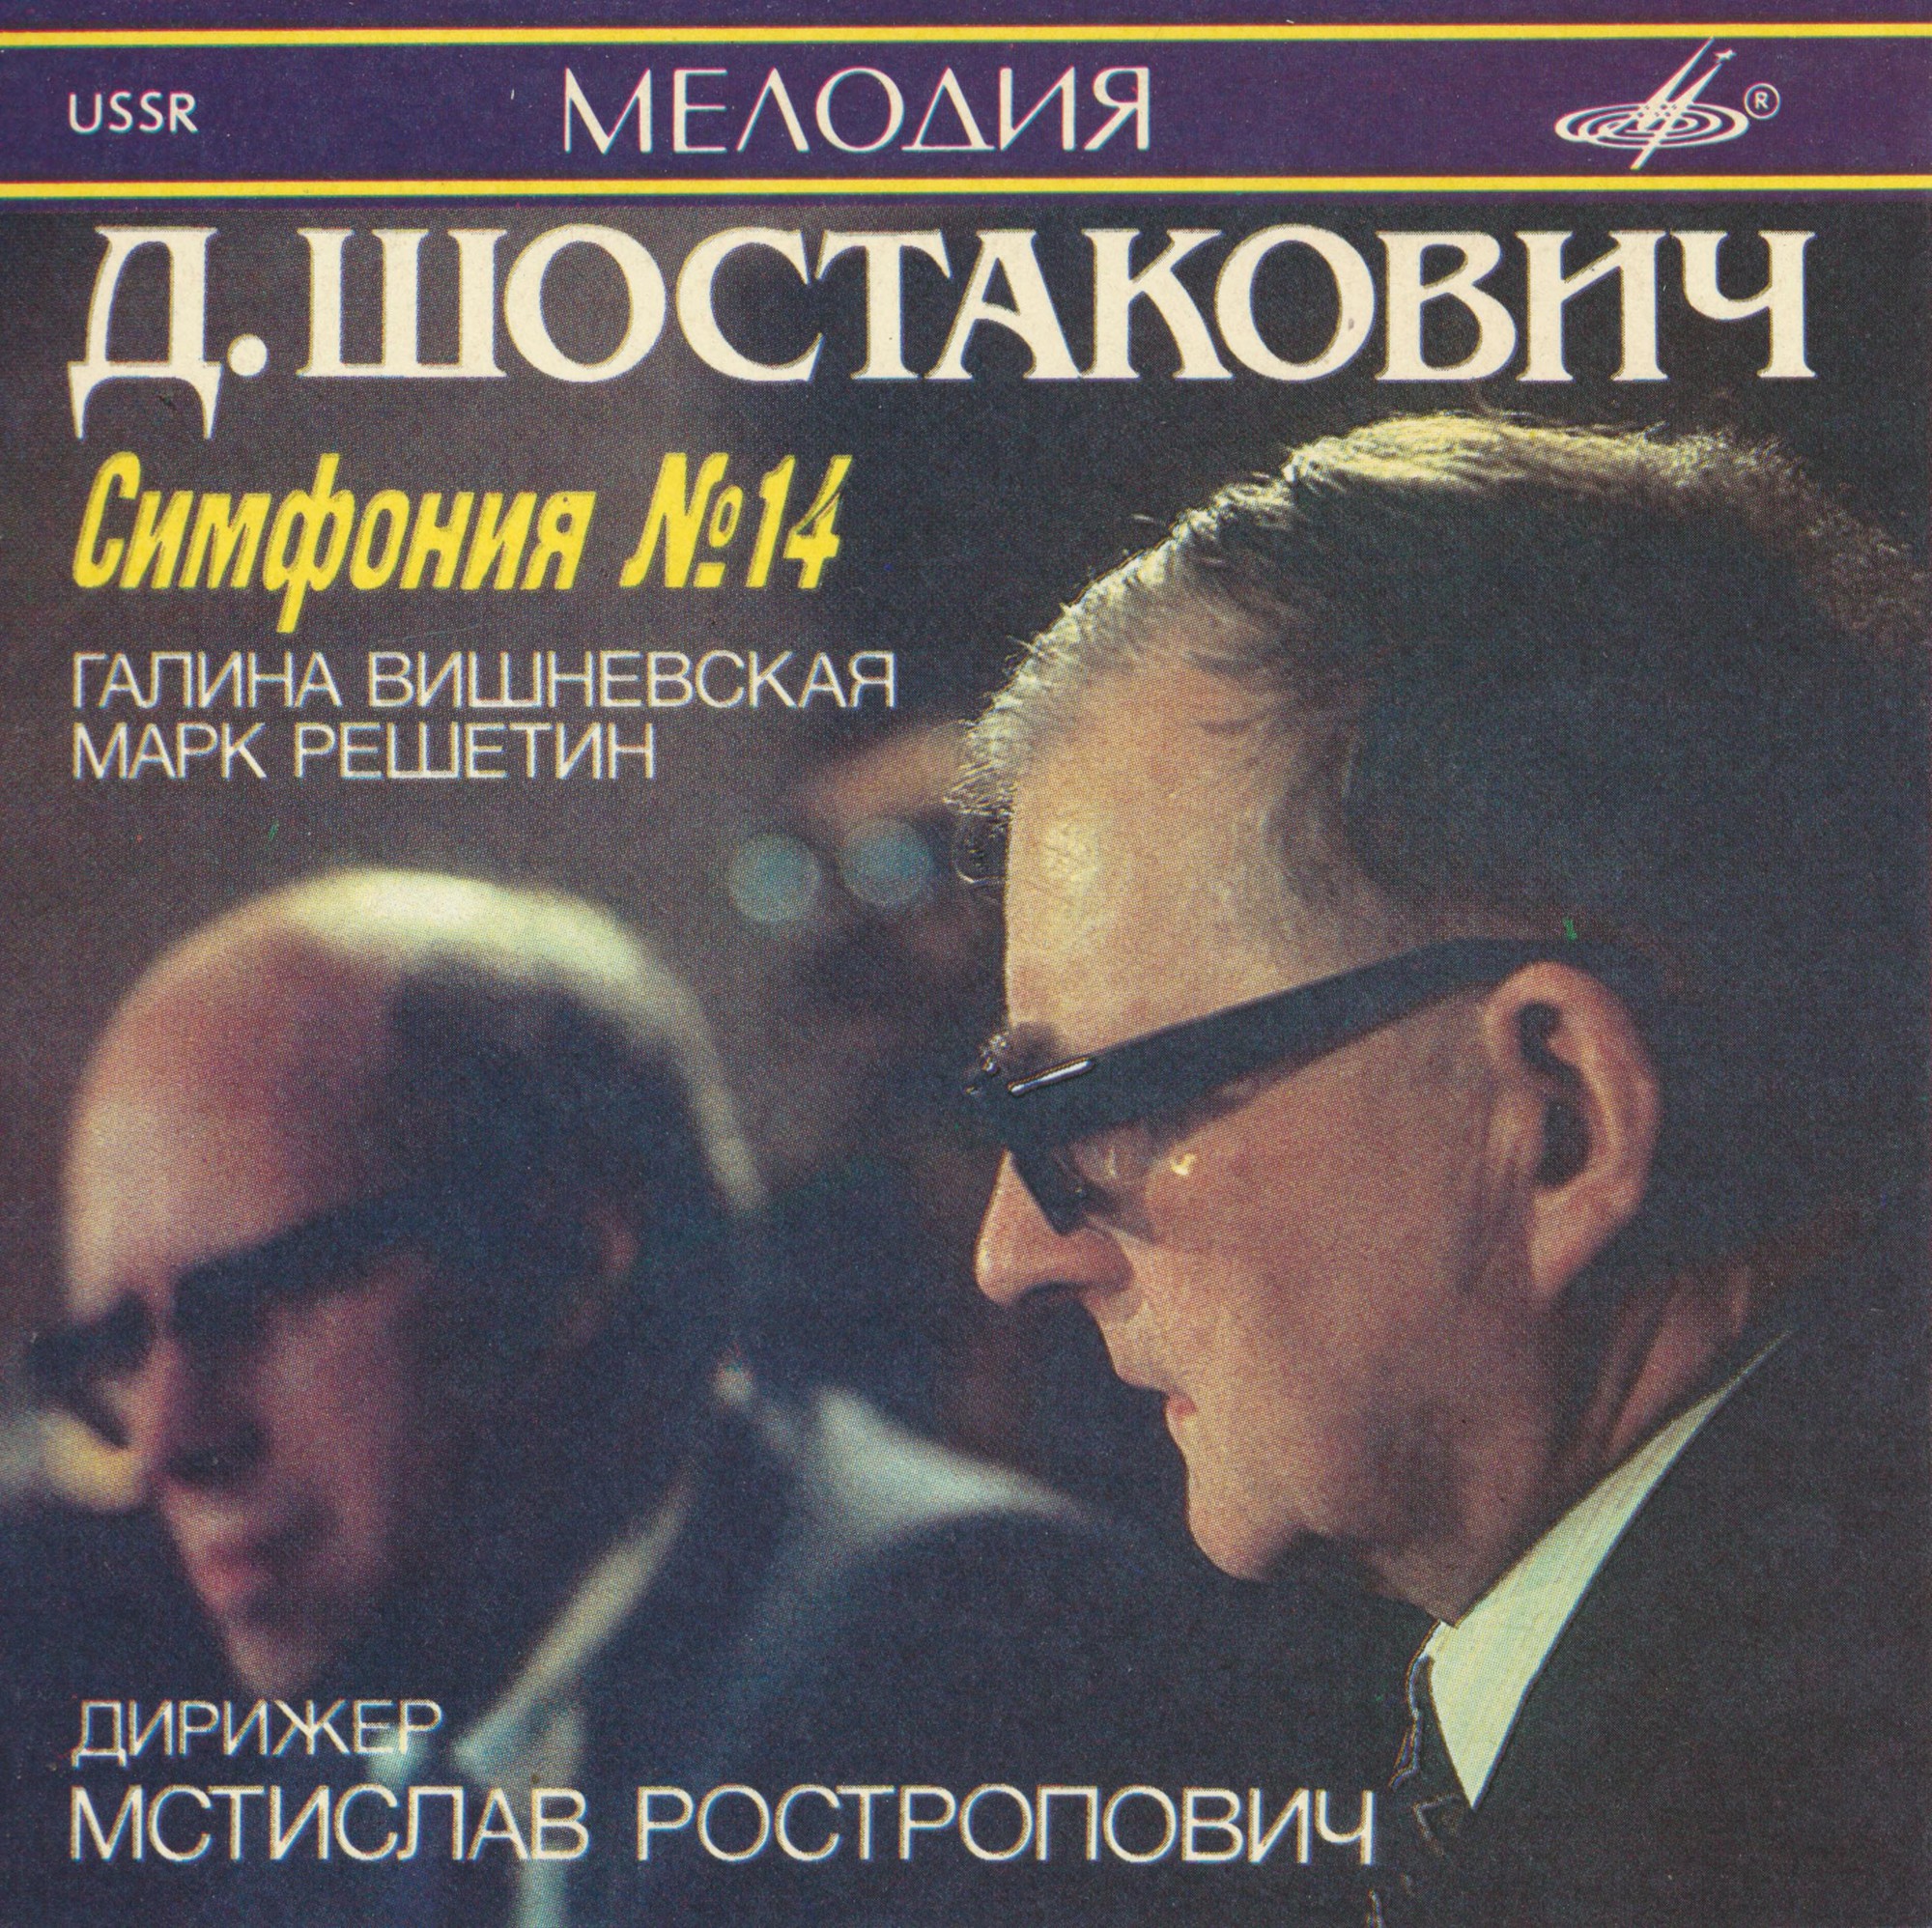 Д. ШОСТАКОВИЧ (1906—1975)- Симфония № 14